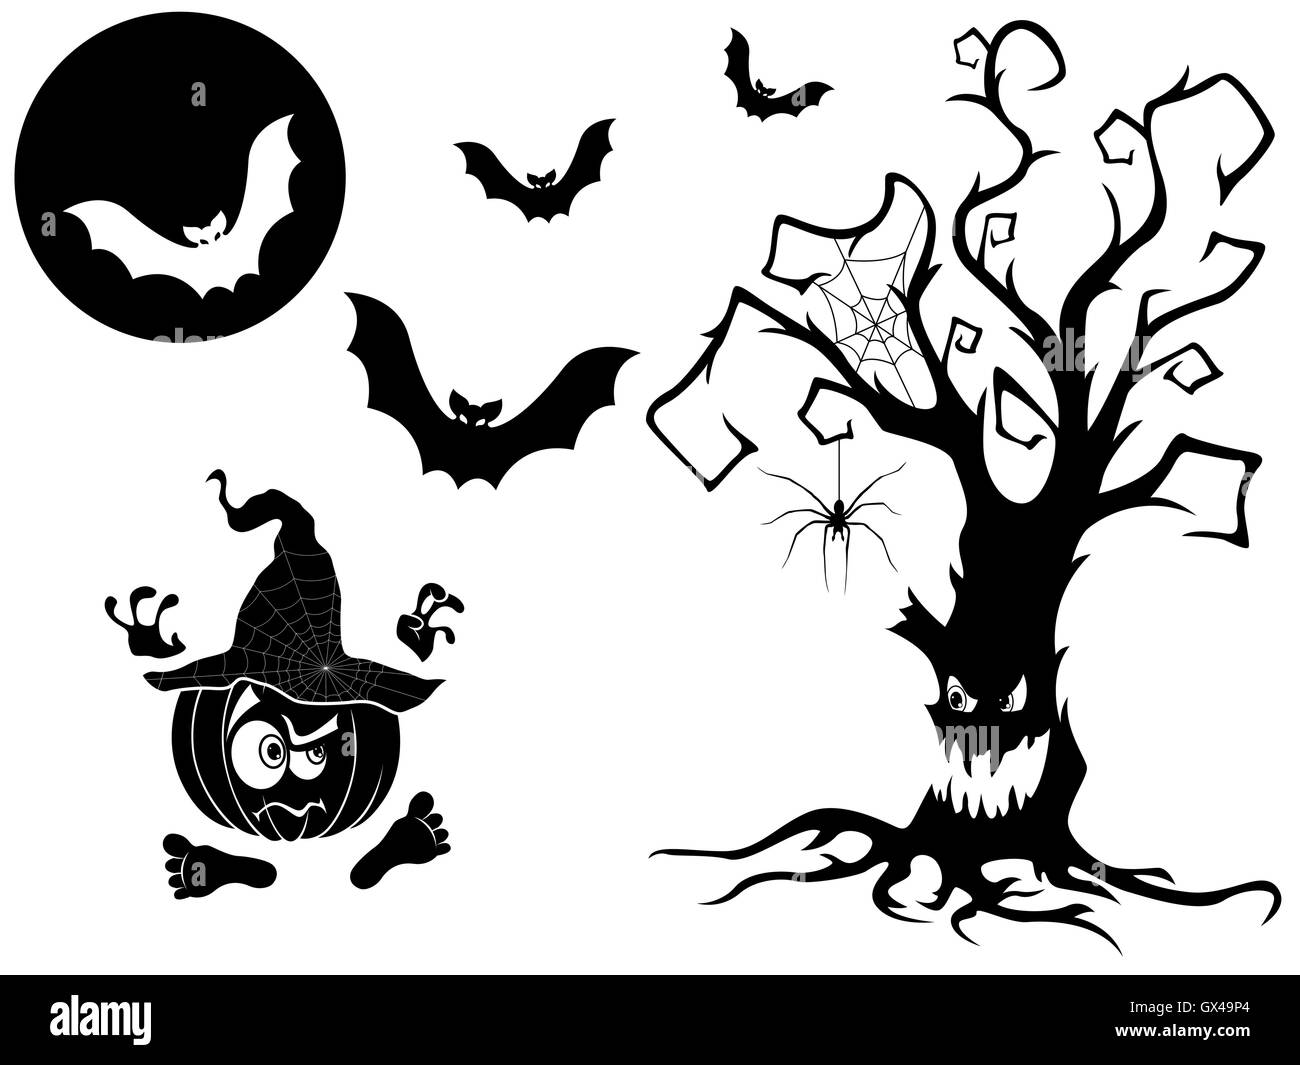 Satz von anderen Vektor Silhouetten mit Halloween-Attribute, nämlich zornigen alten Baum, wütend Kürbis im Hut, Fledermäuse, voll getrocknet Stock Vektor